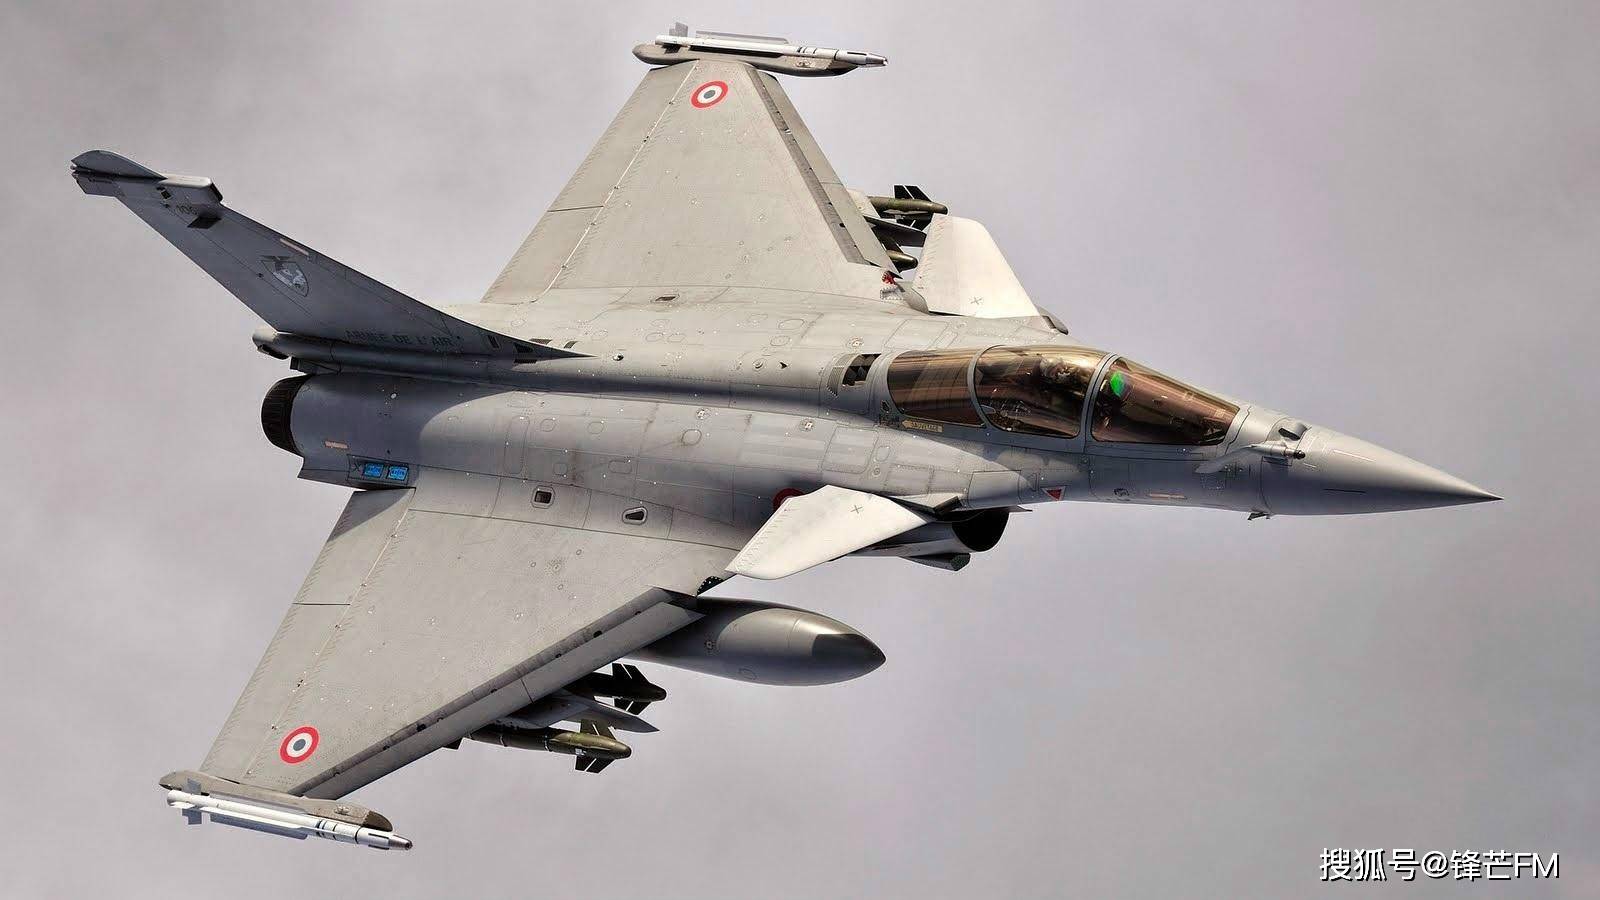 

印度空军决定5年之内退役米格飞机将陷入“无机可用”